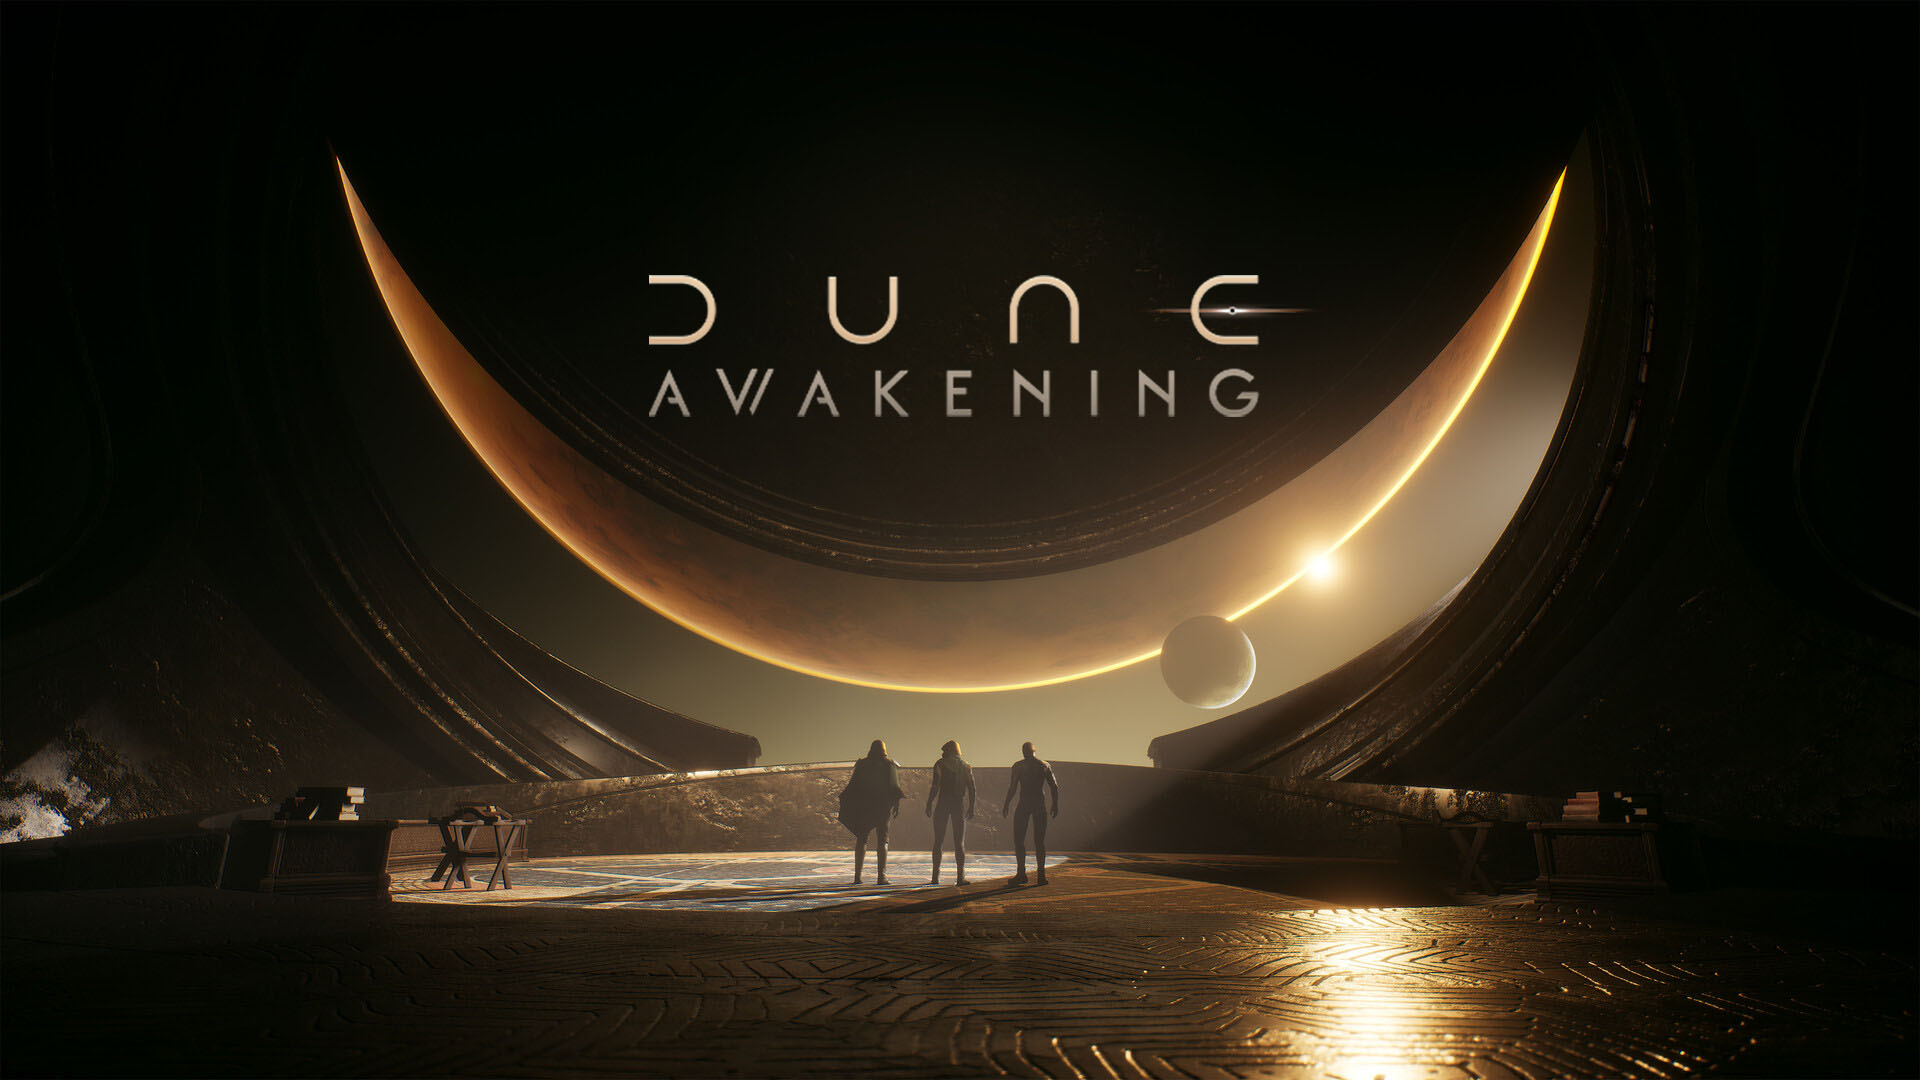 Dune: Awakening shares first pre-alpha gameplay teaser